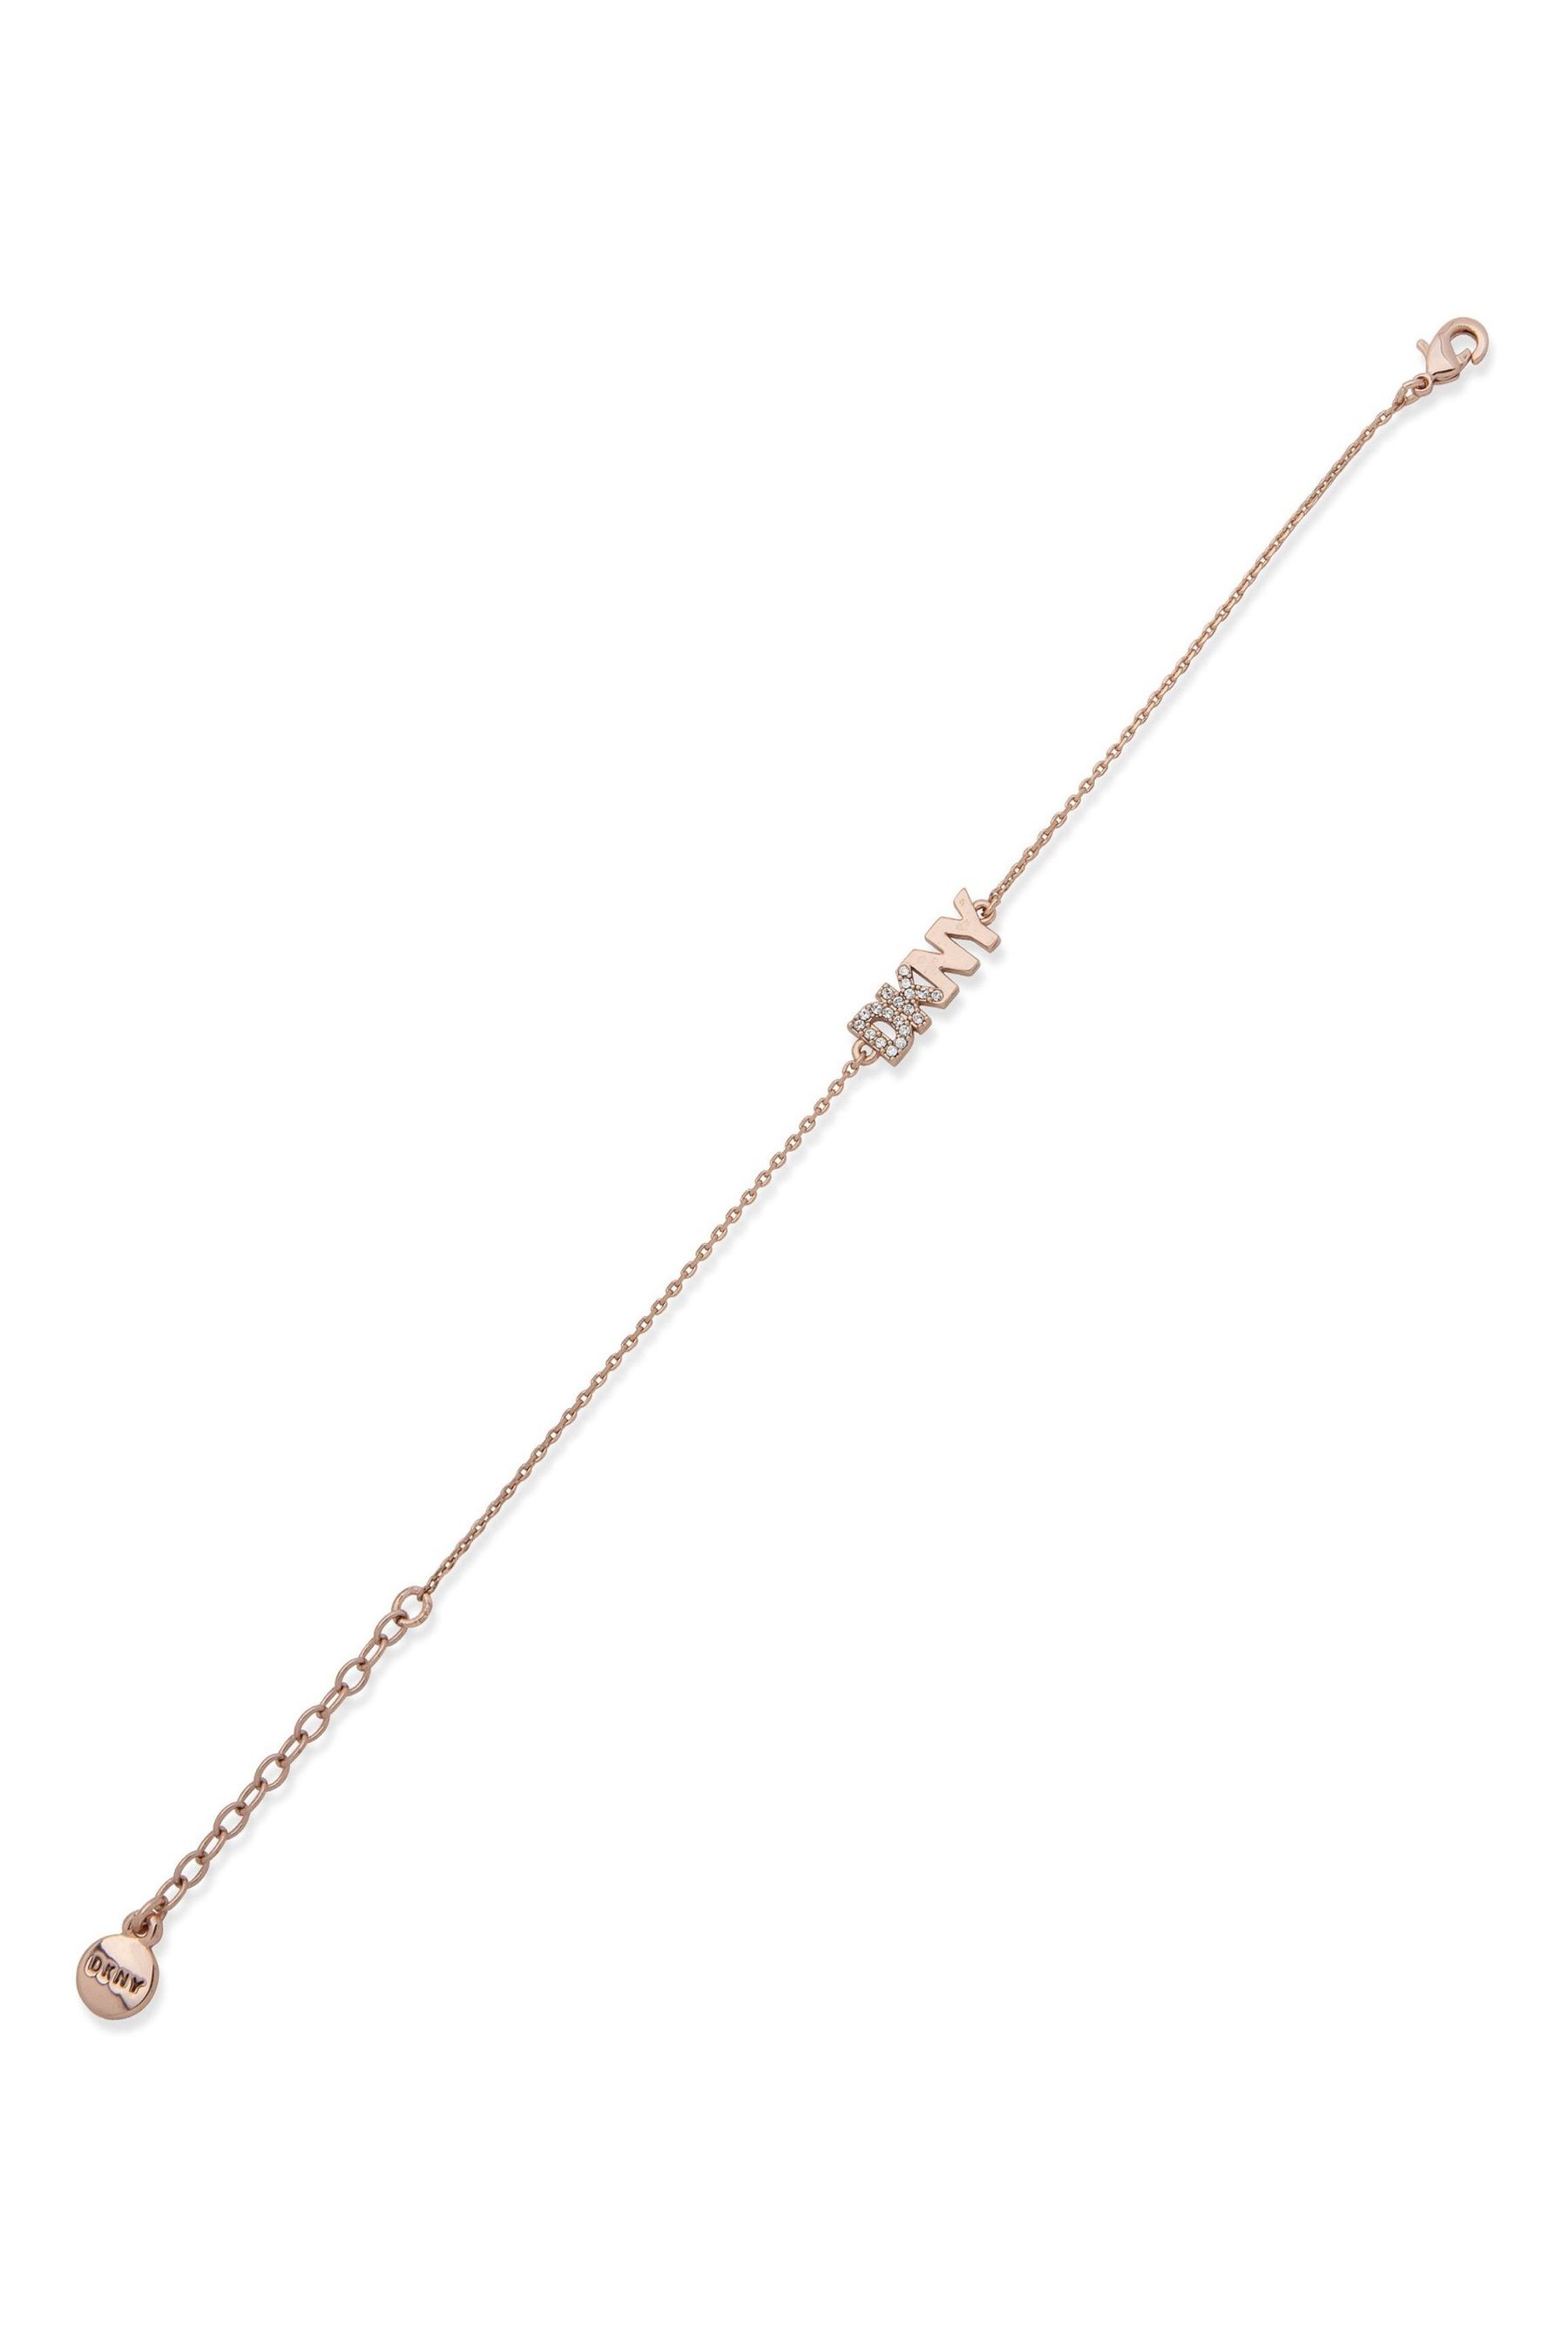 DKNY Gold-Tone Polished Rounded Hinge Bangle Bracelet - Macy's